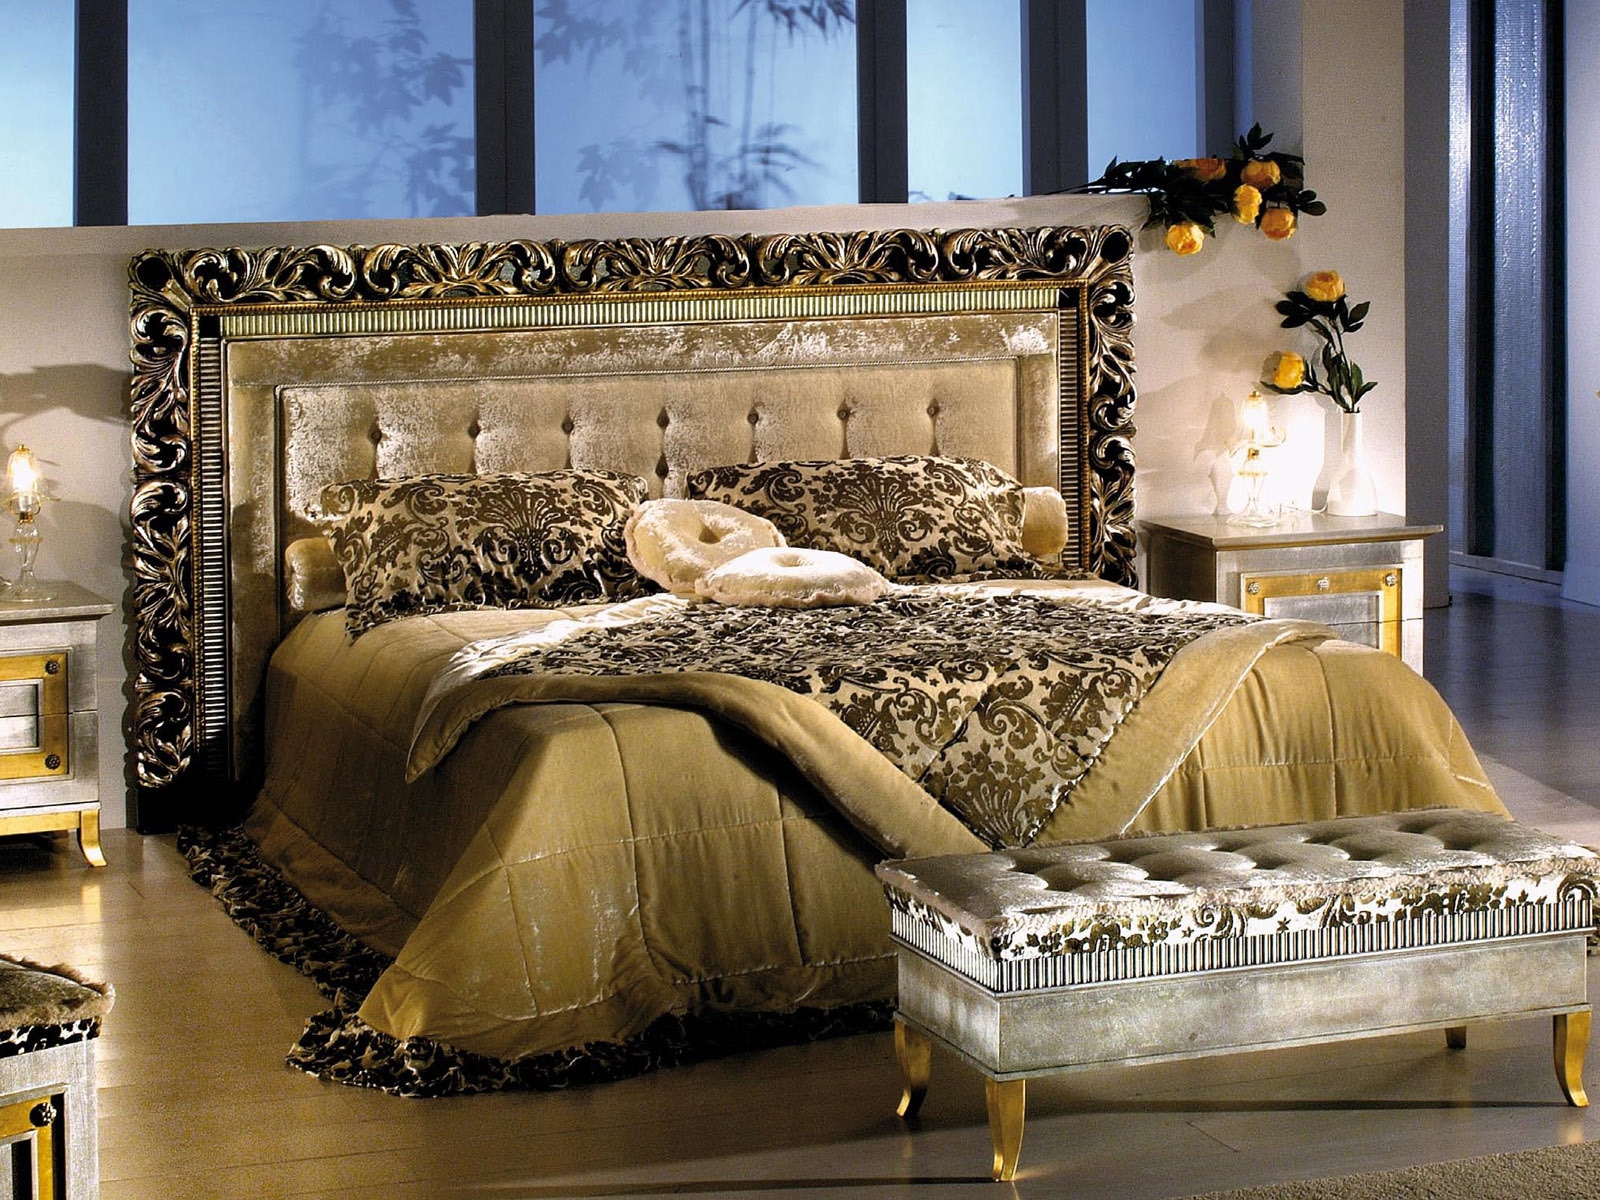 Bedroom in velvet for 1600 x 1200 resolution